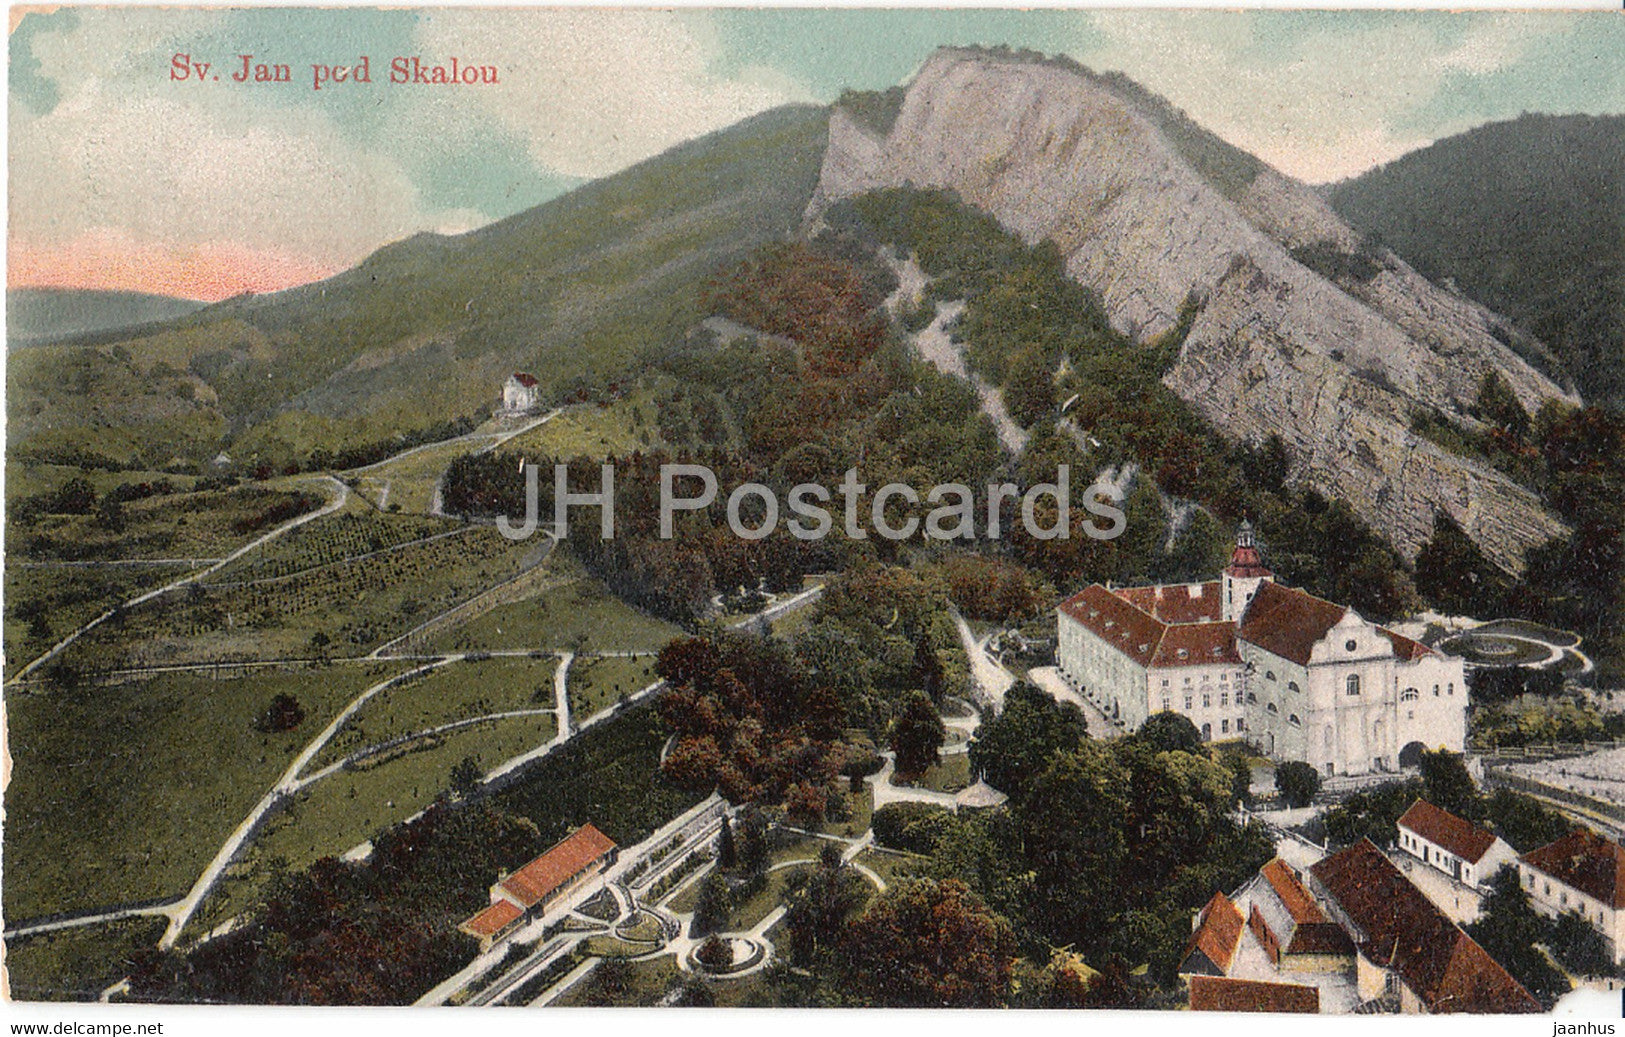 Sv Jan pod Skalou - old postcard - 1908 - Czech Republic - used - JH Postcards